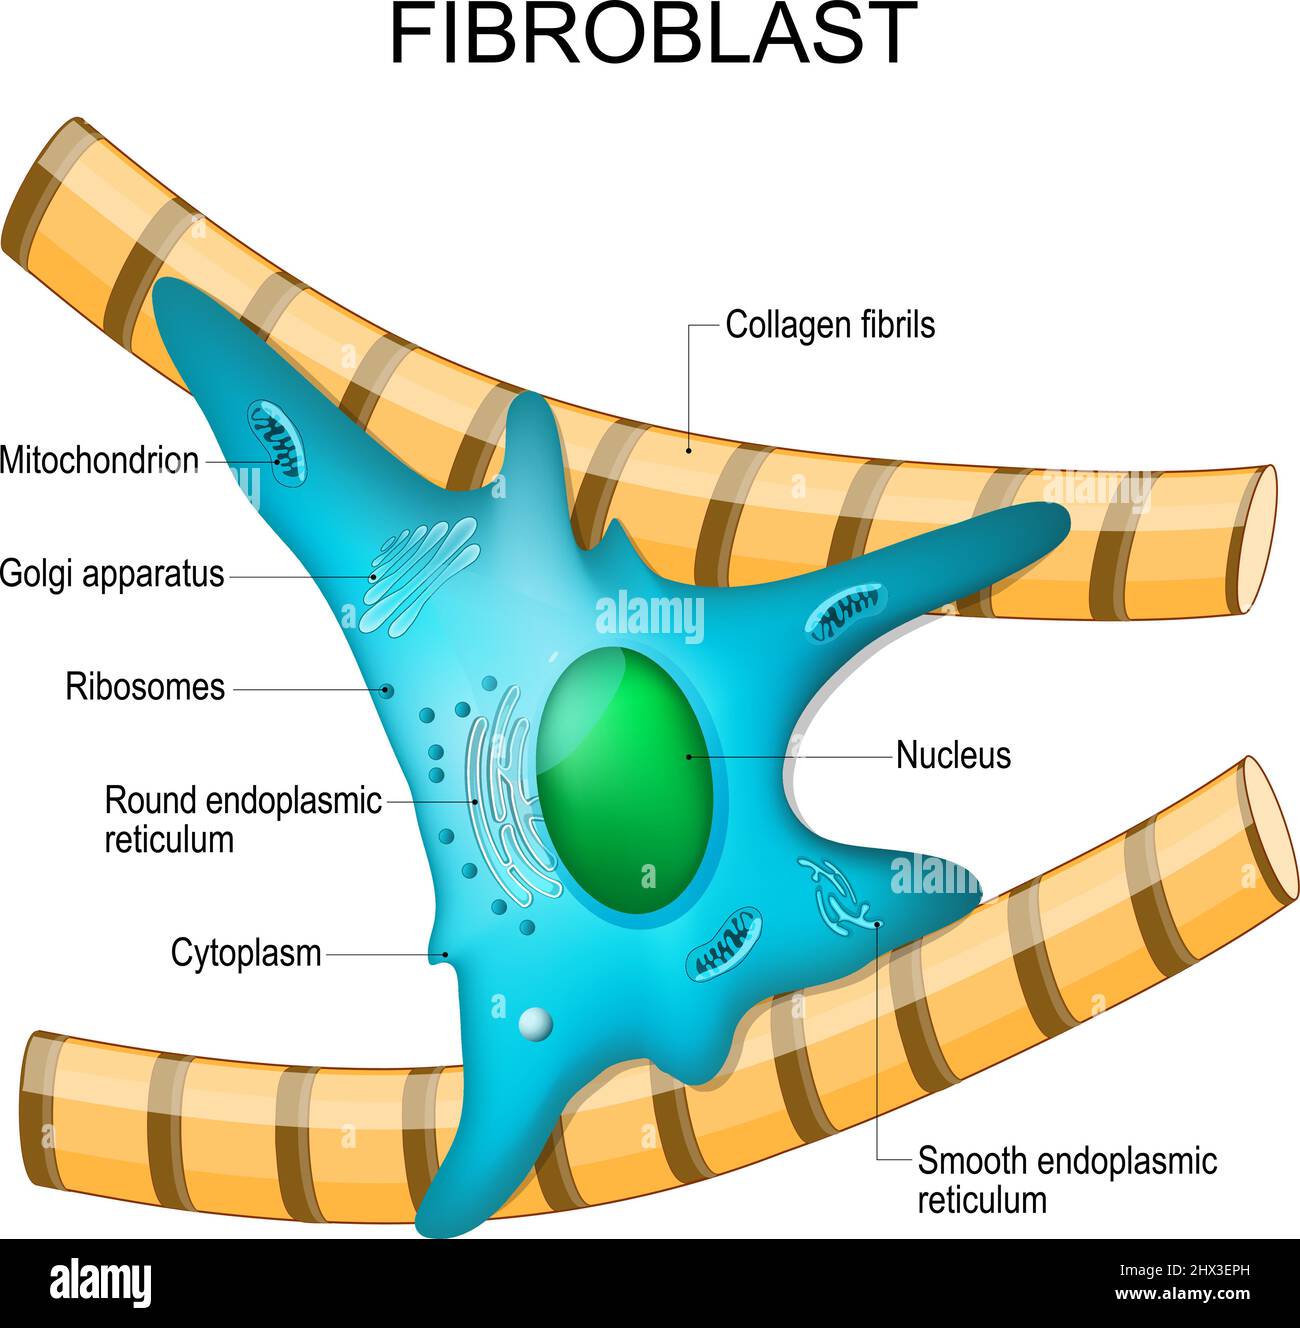 Fibroblasten-Anatomie. Struktur der Zelle. Diagramm mit golgi-Apparat, Zellkern, Mitochondrien und Ribosomen. vektordarstellung. Poster Stock Vektor